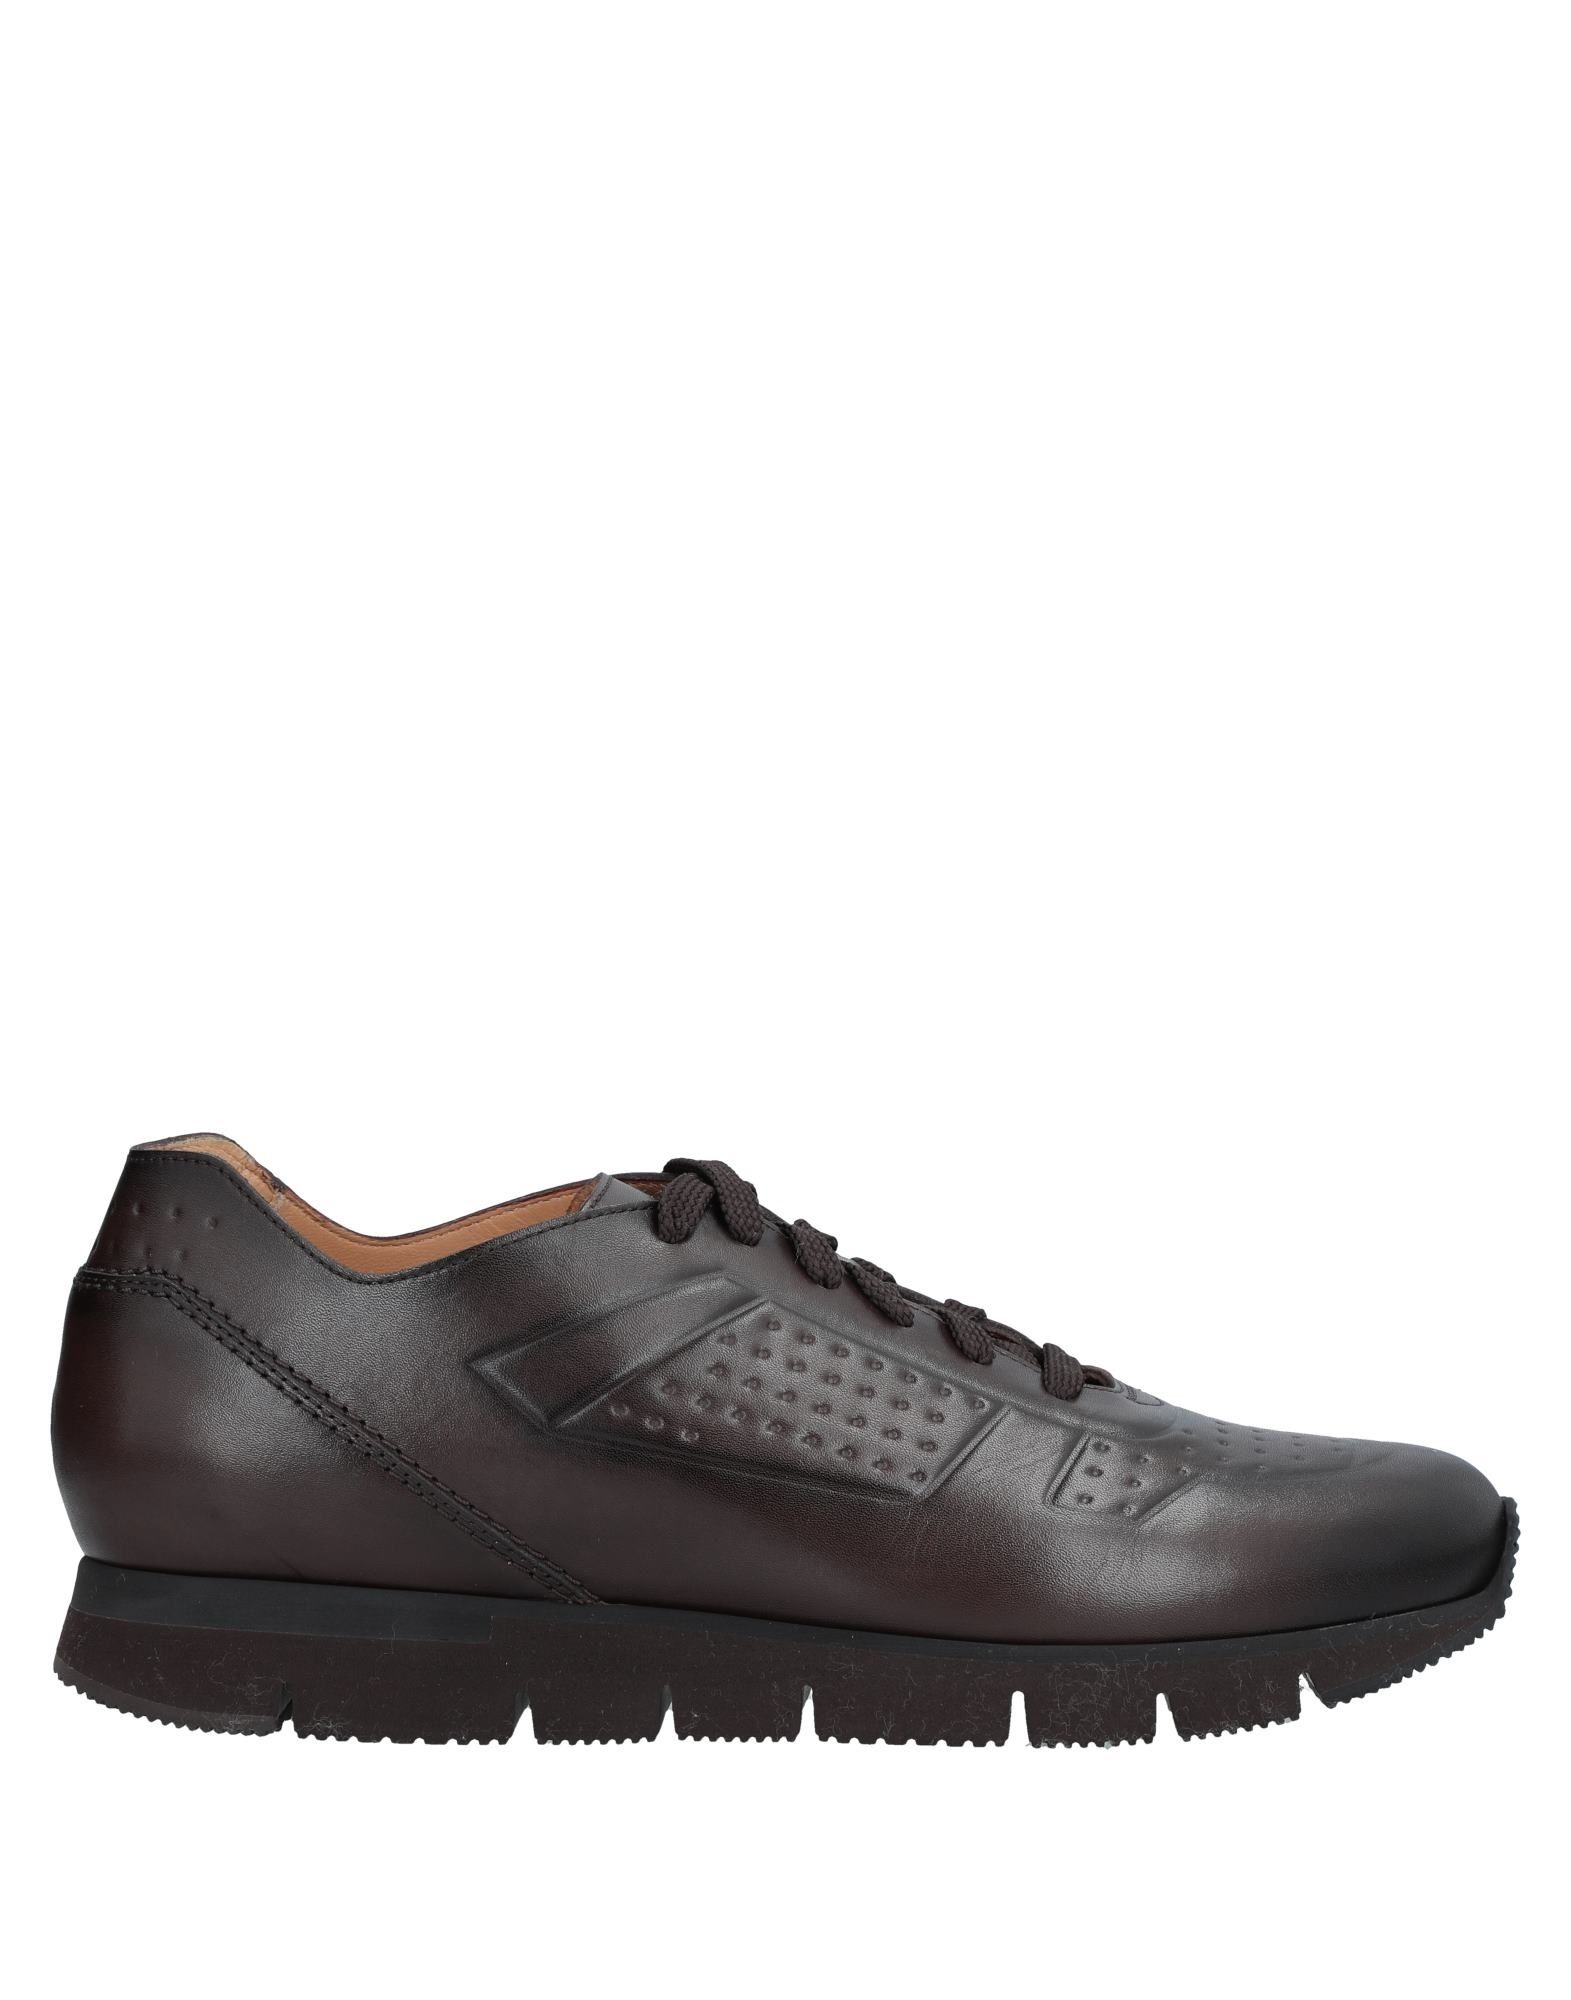 SANTONI Low-tops & sneakers - Item 11320121